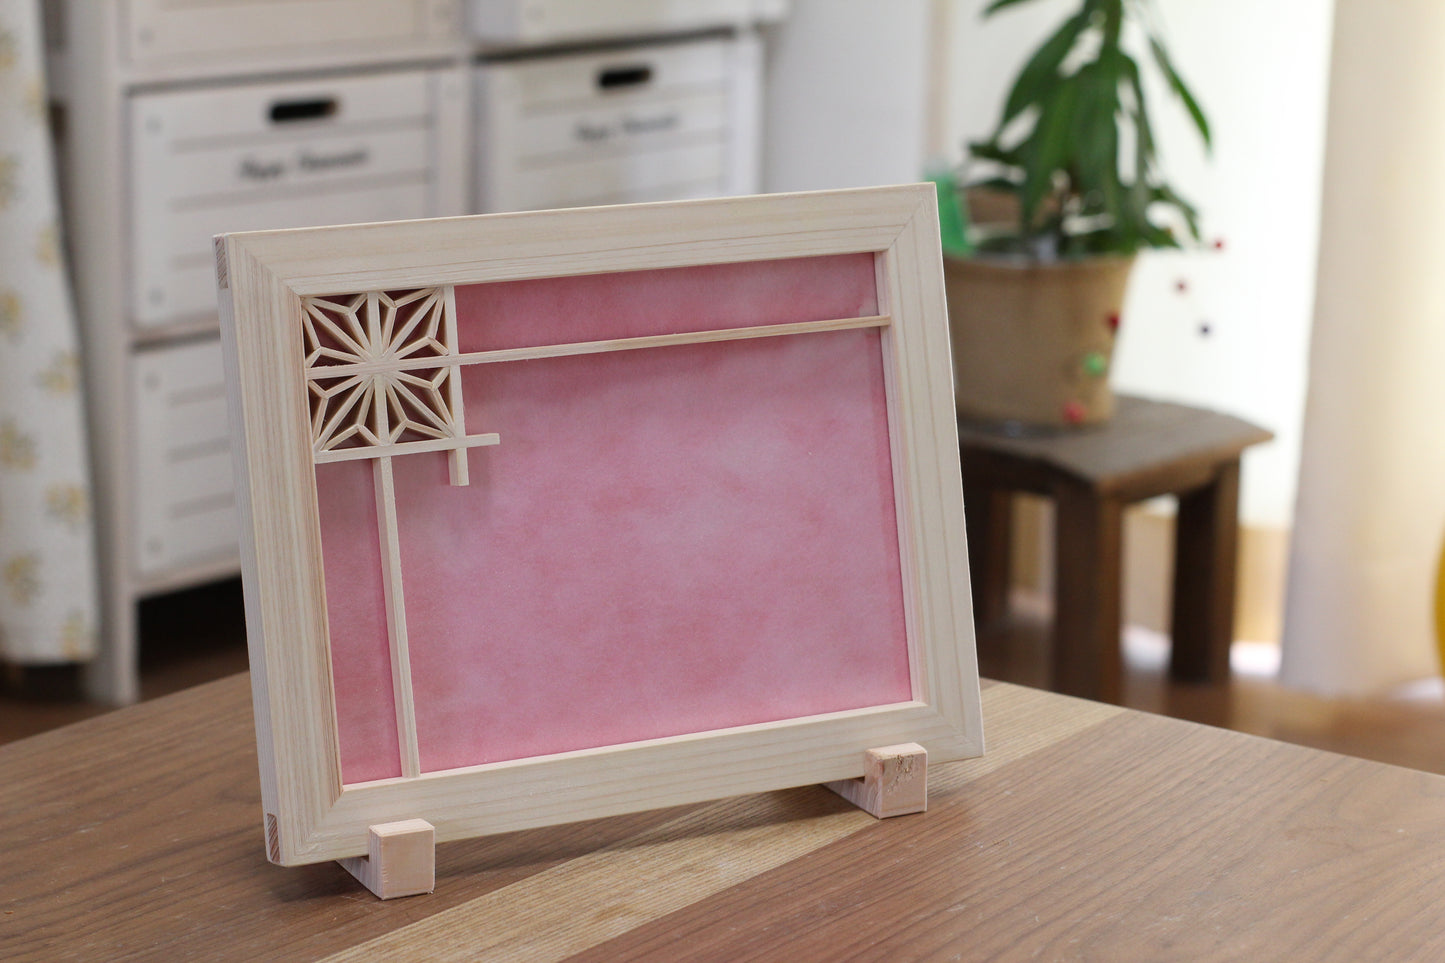 Wooden photo frame, hemp leaf, pink Japanese paper